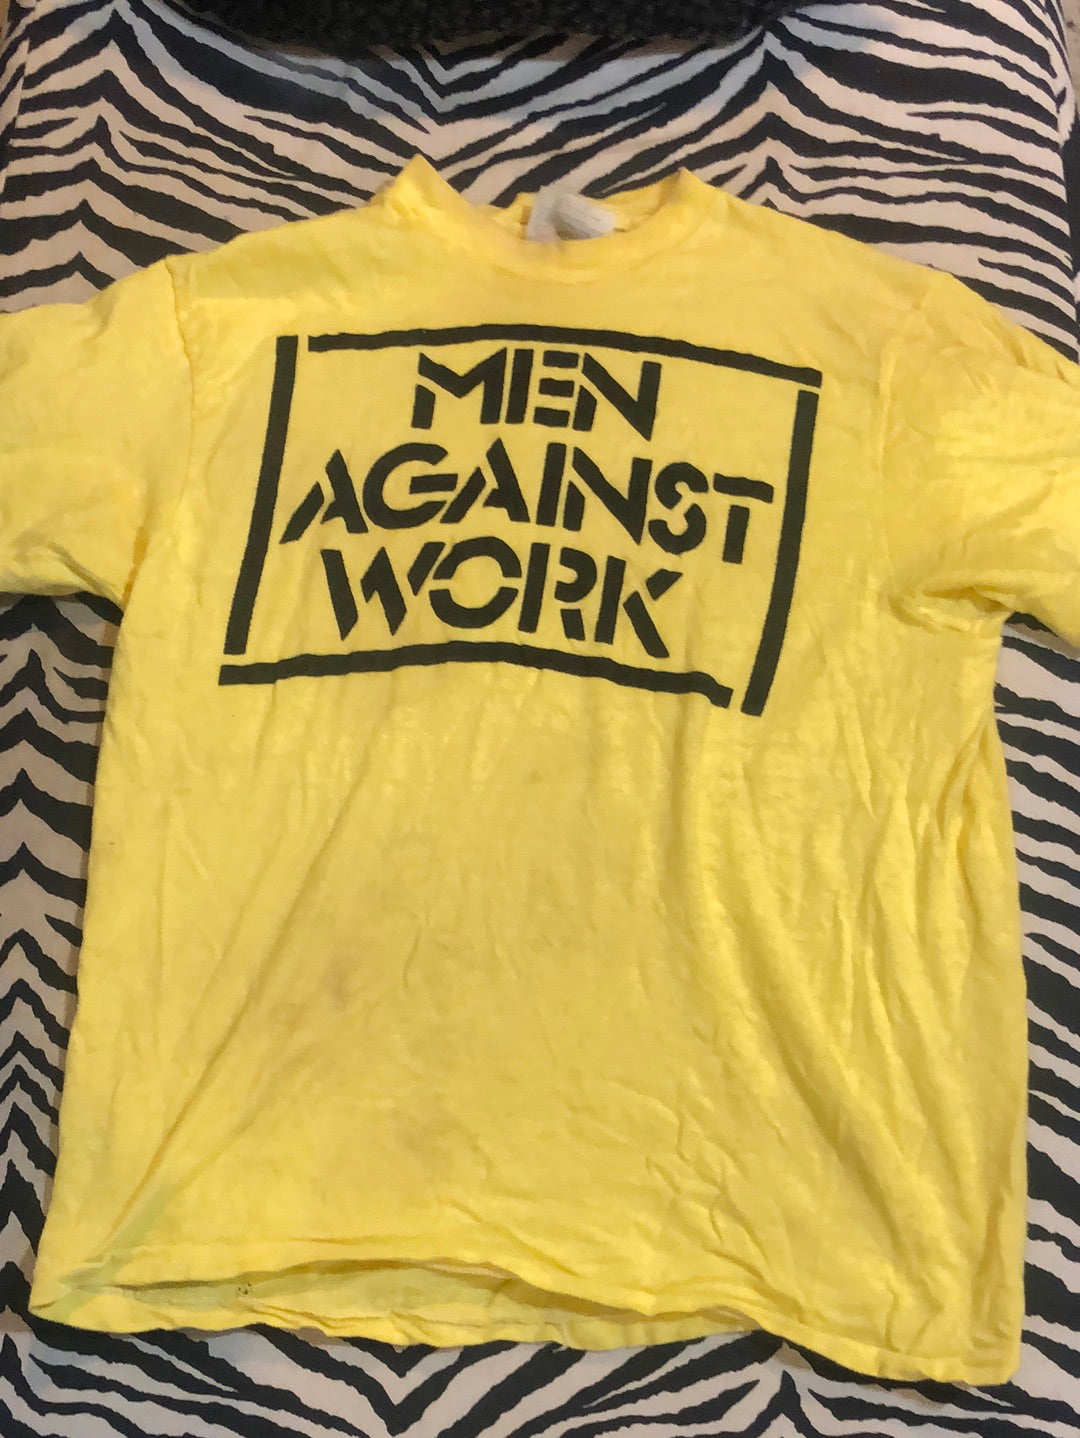 “Men Against Work" Vintage T-Shirt